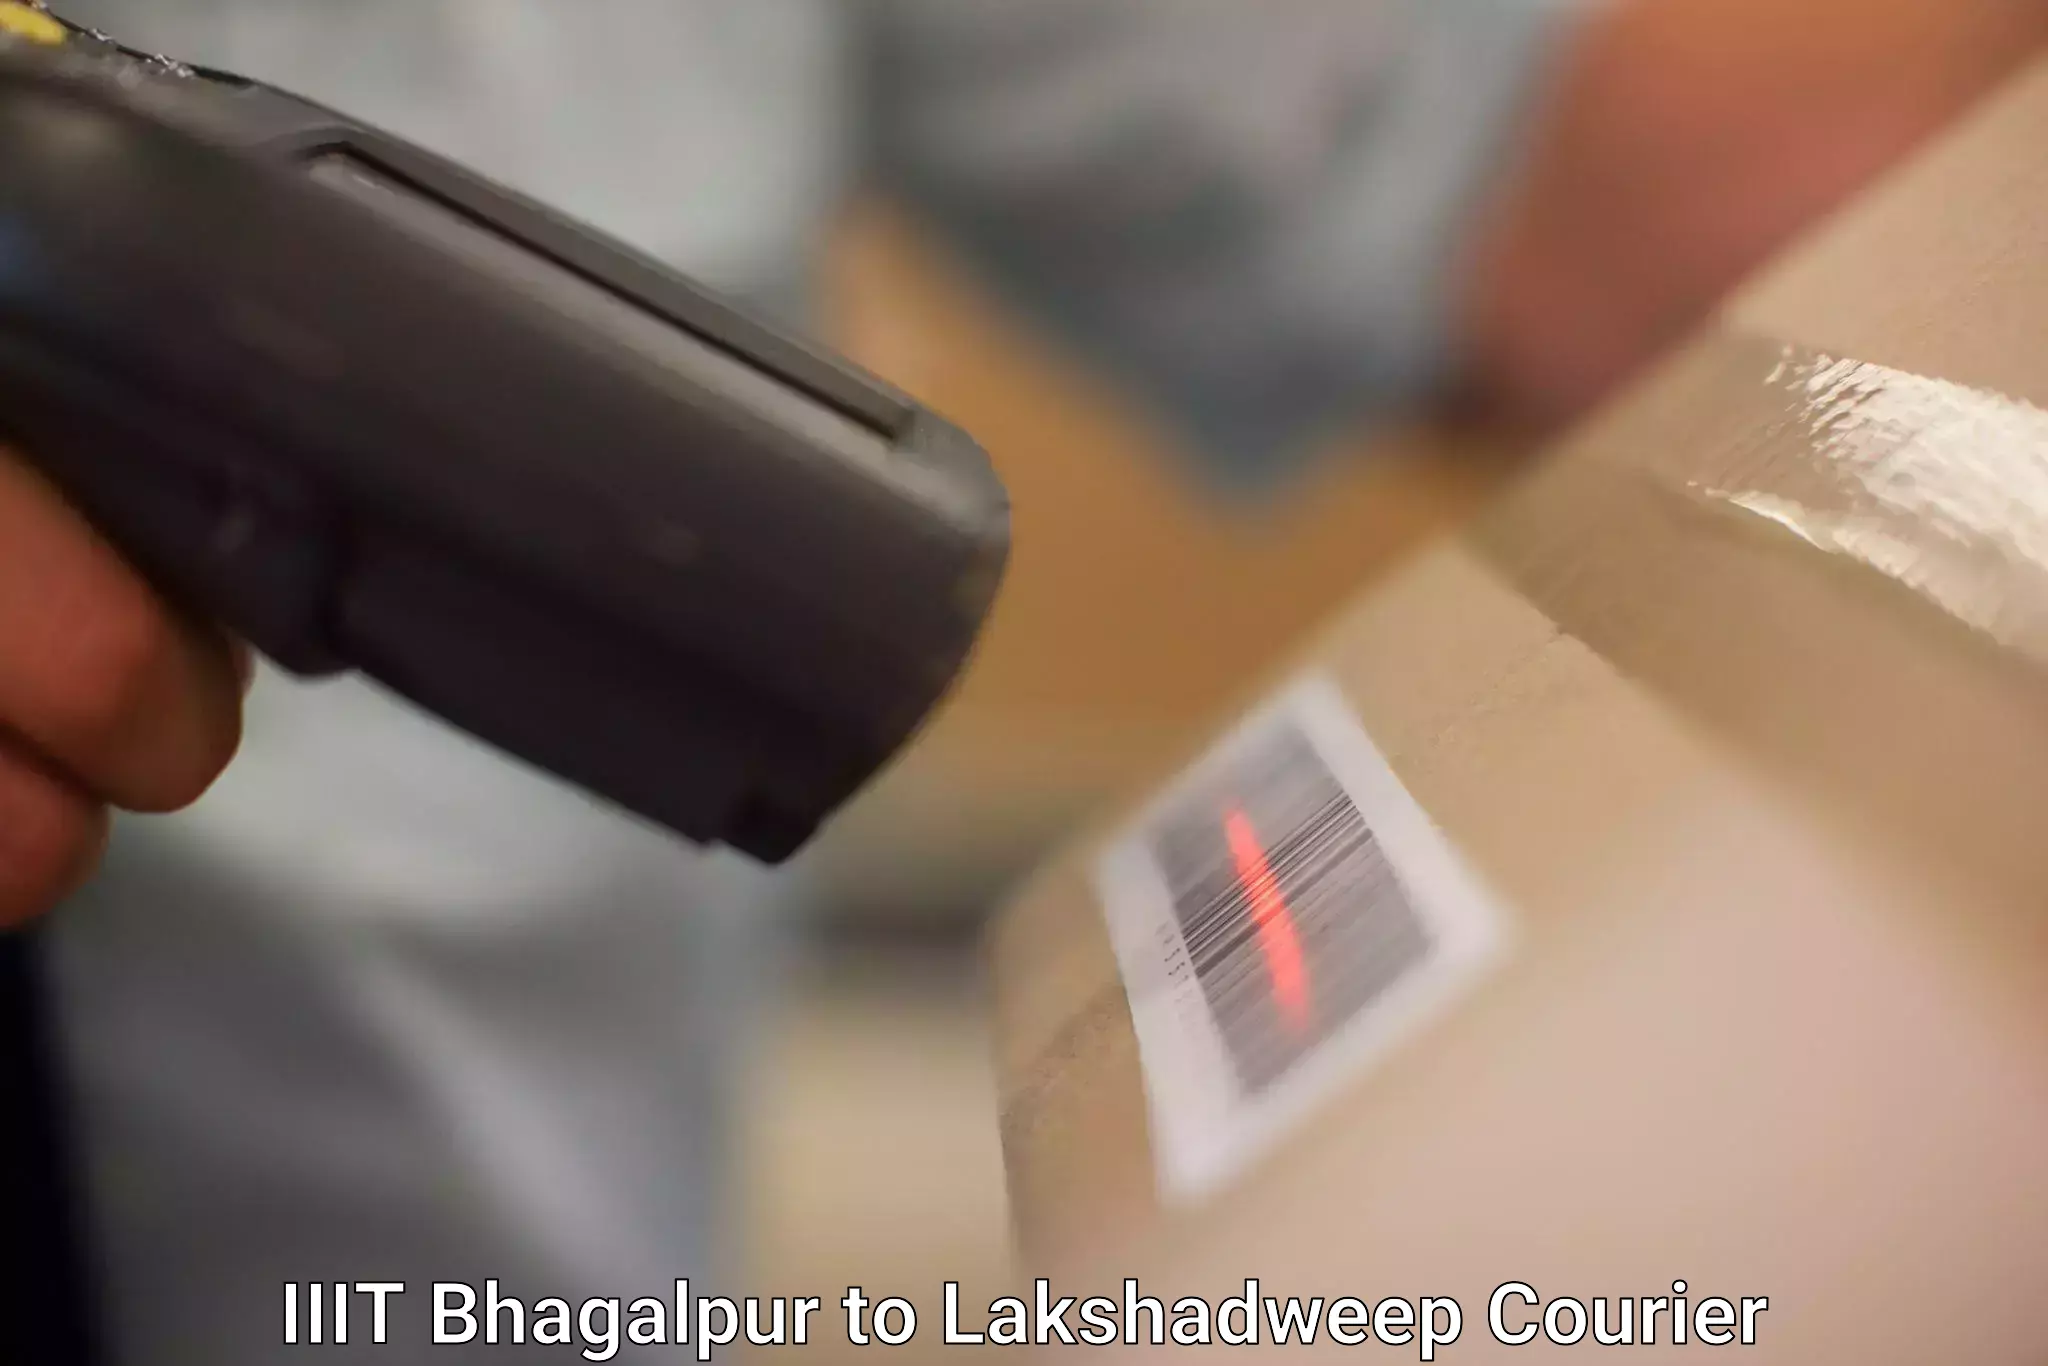 Bulk courier orders in IIIT Bhagalpur to Lakshadweep